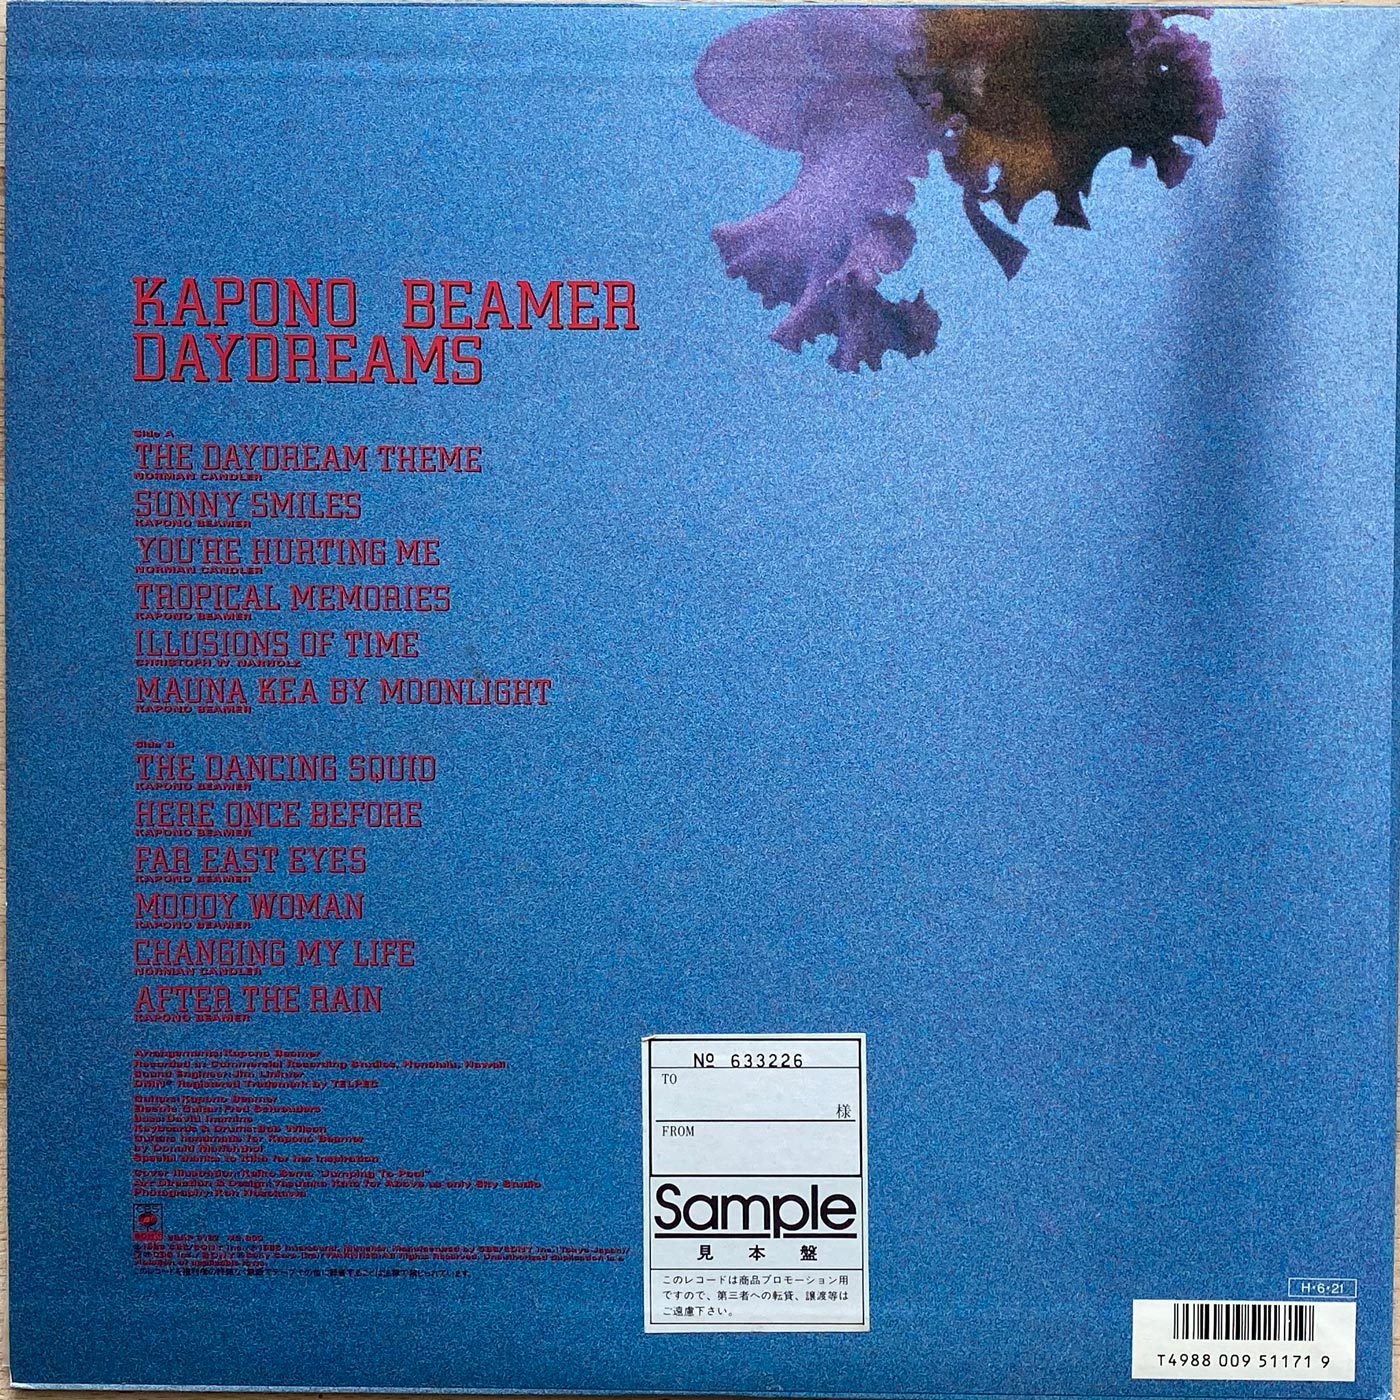 Kapono Beamer - Daydreams